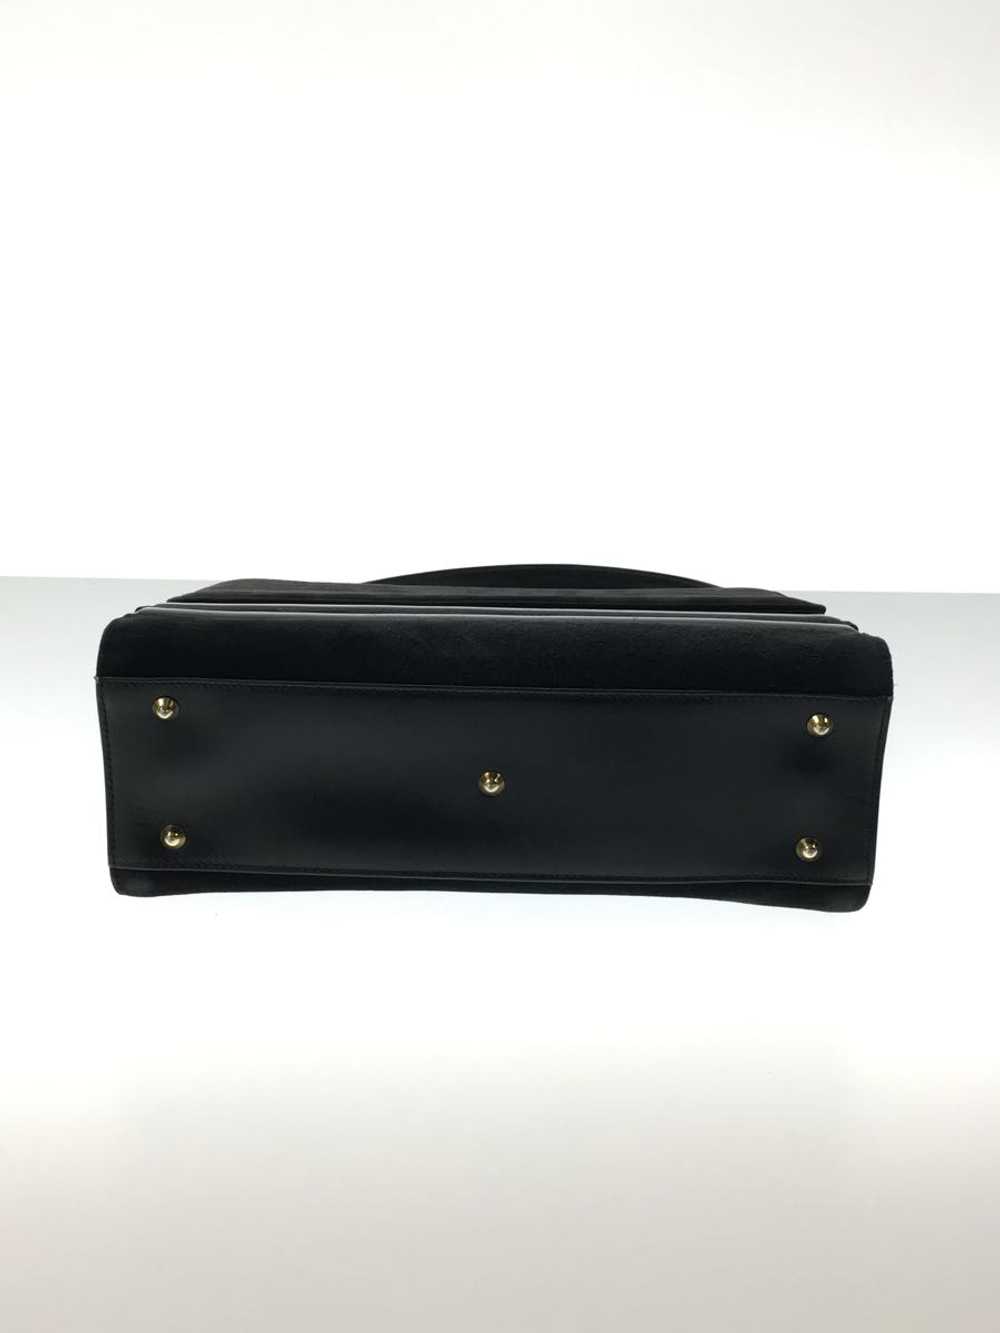 Gucci Handbag Leather Black Old Bag - image 5